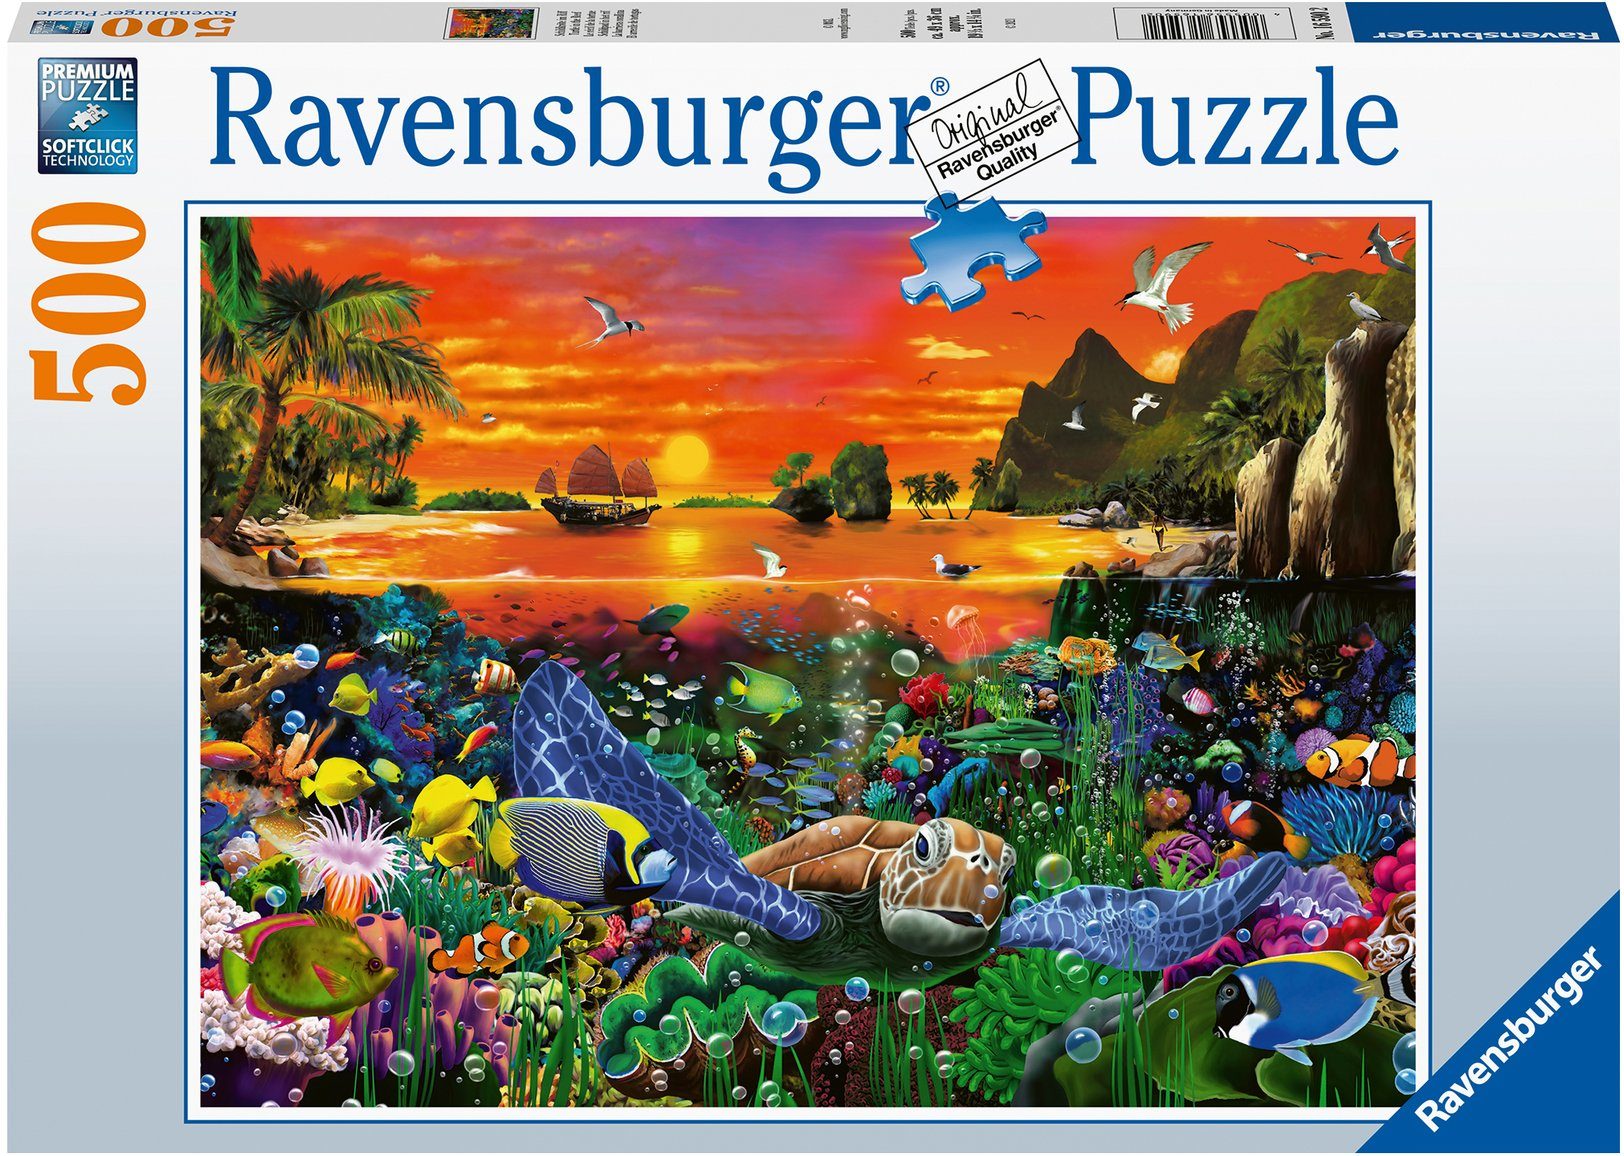 Ravensburger Puzzle Schildkröte im Riff, 500 Puzzleteile, Made in Germany, FSC® - schützt Wald - weltweit